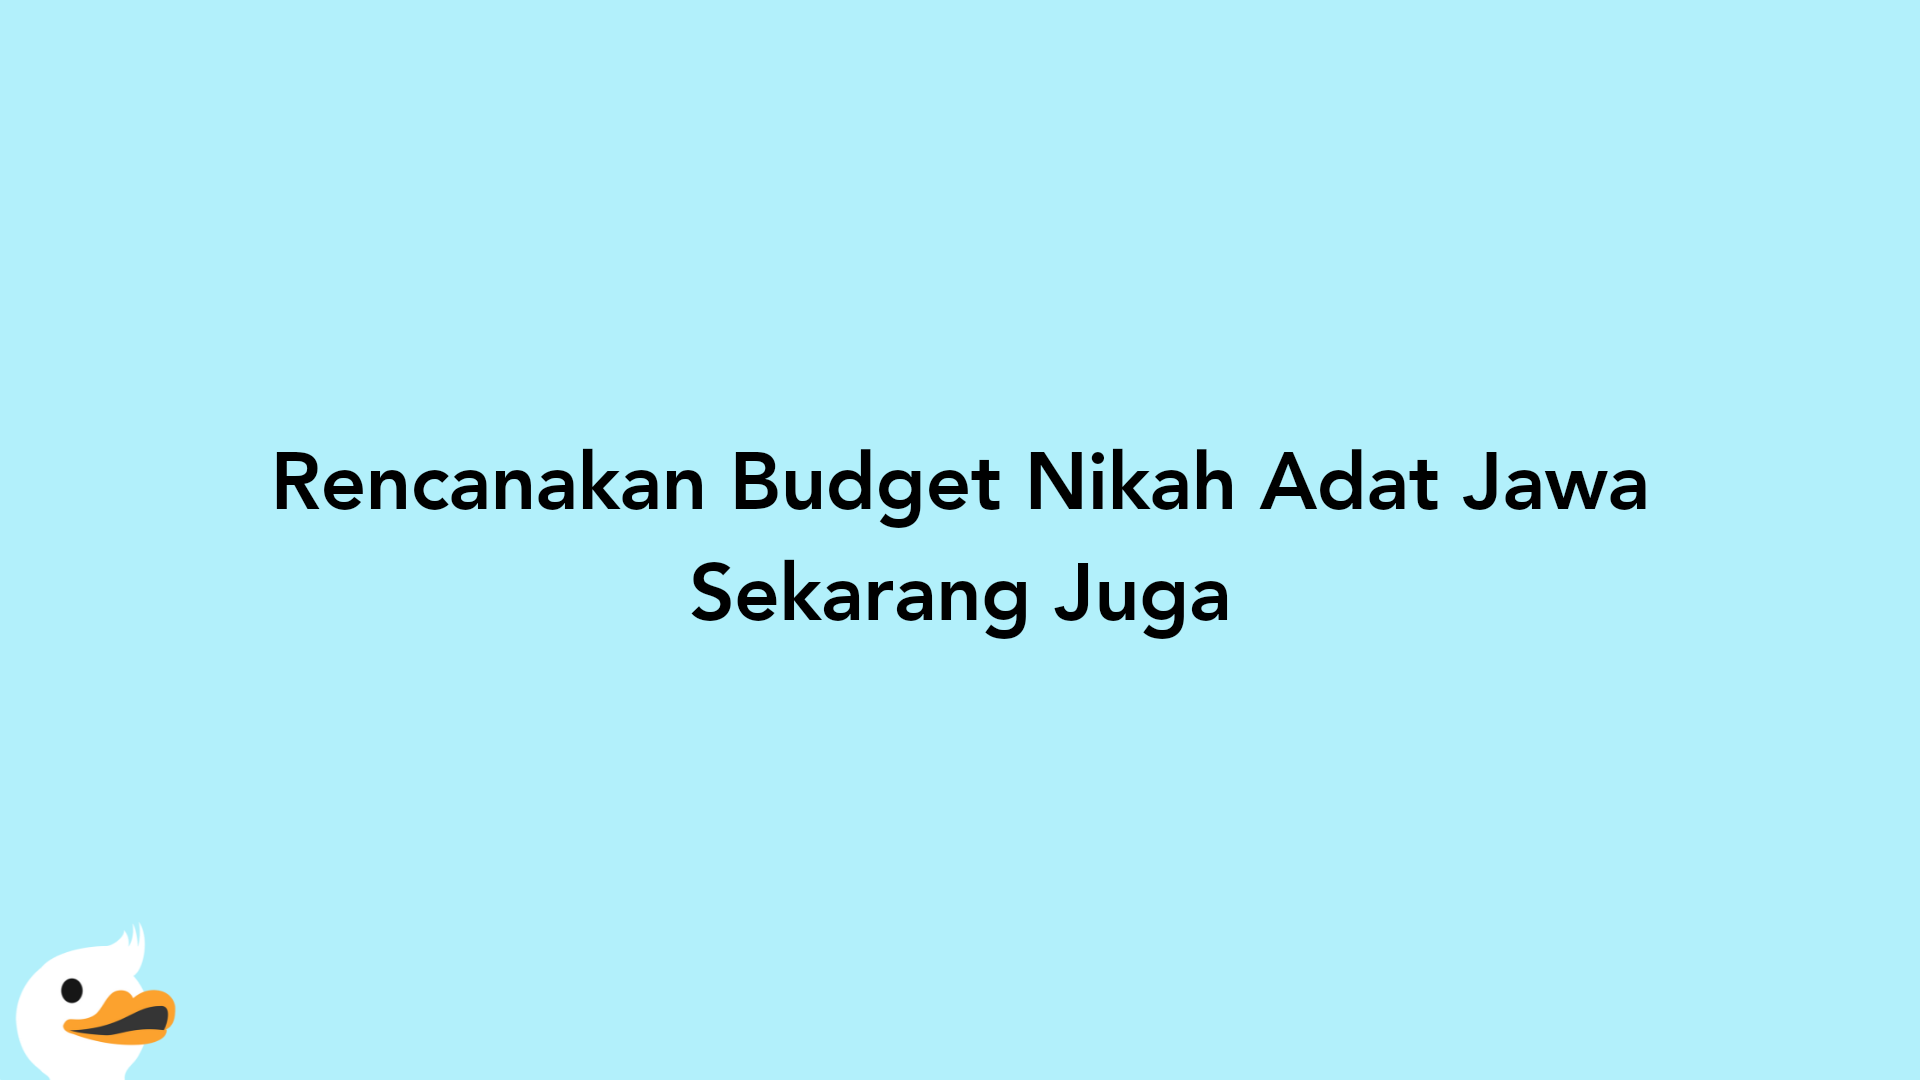 Rencanakan Budget Nikah Adat Jawa Sekarang Juga